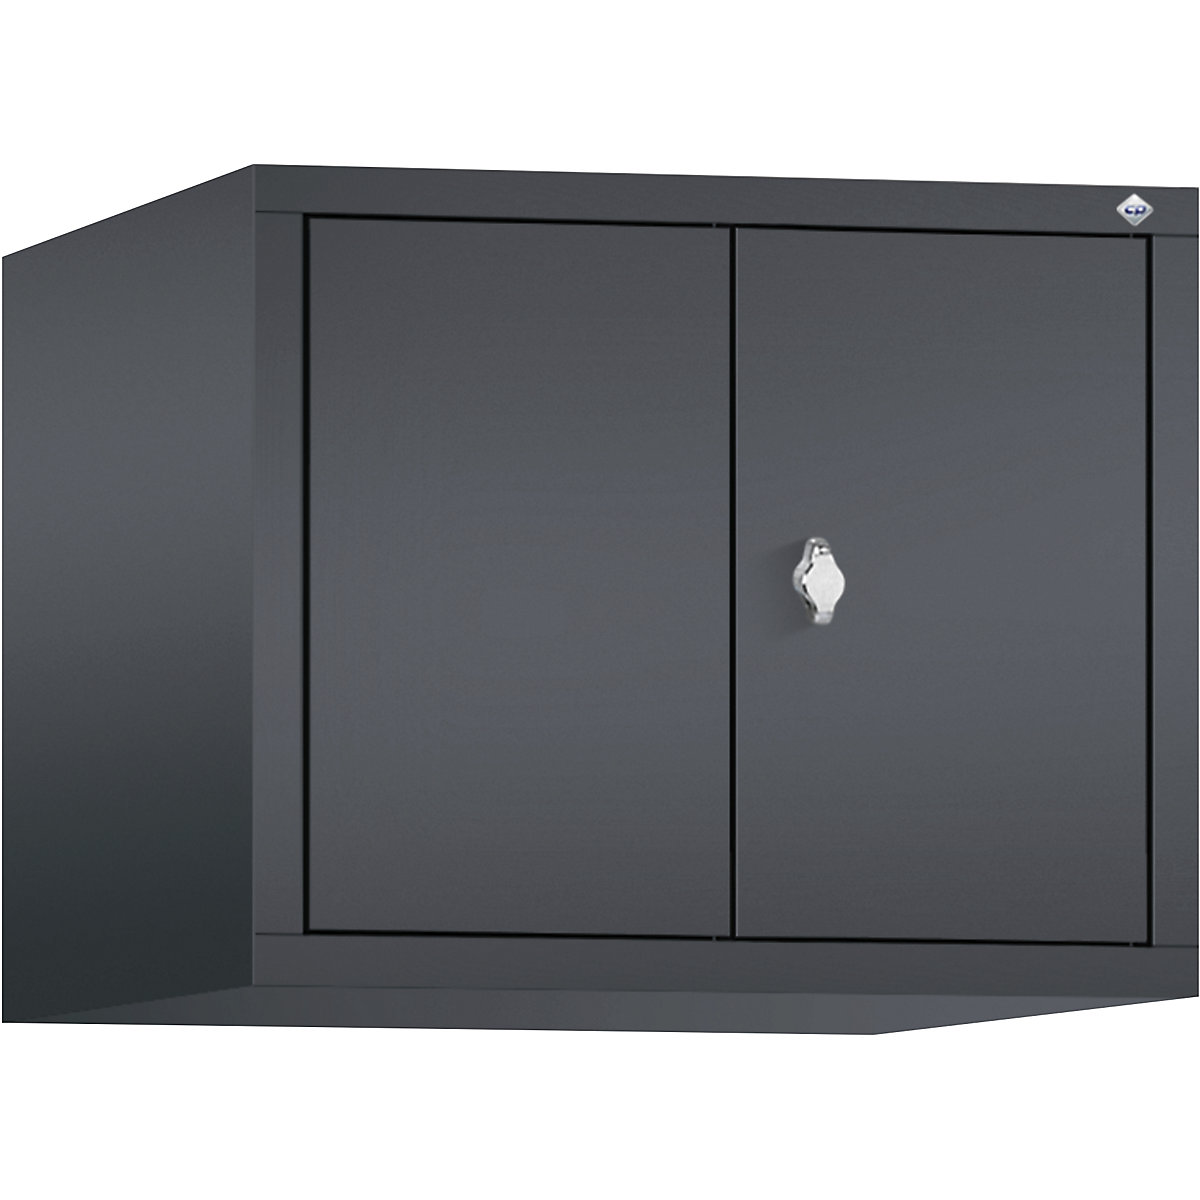 C+P – Altillo CLASSIC, puertas batientes que cierran al ras entre sí, 2 compartimentos, anchura de compartimento 300 mm, gris negruzco